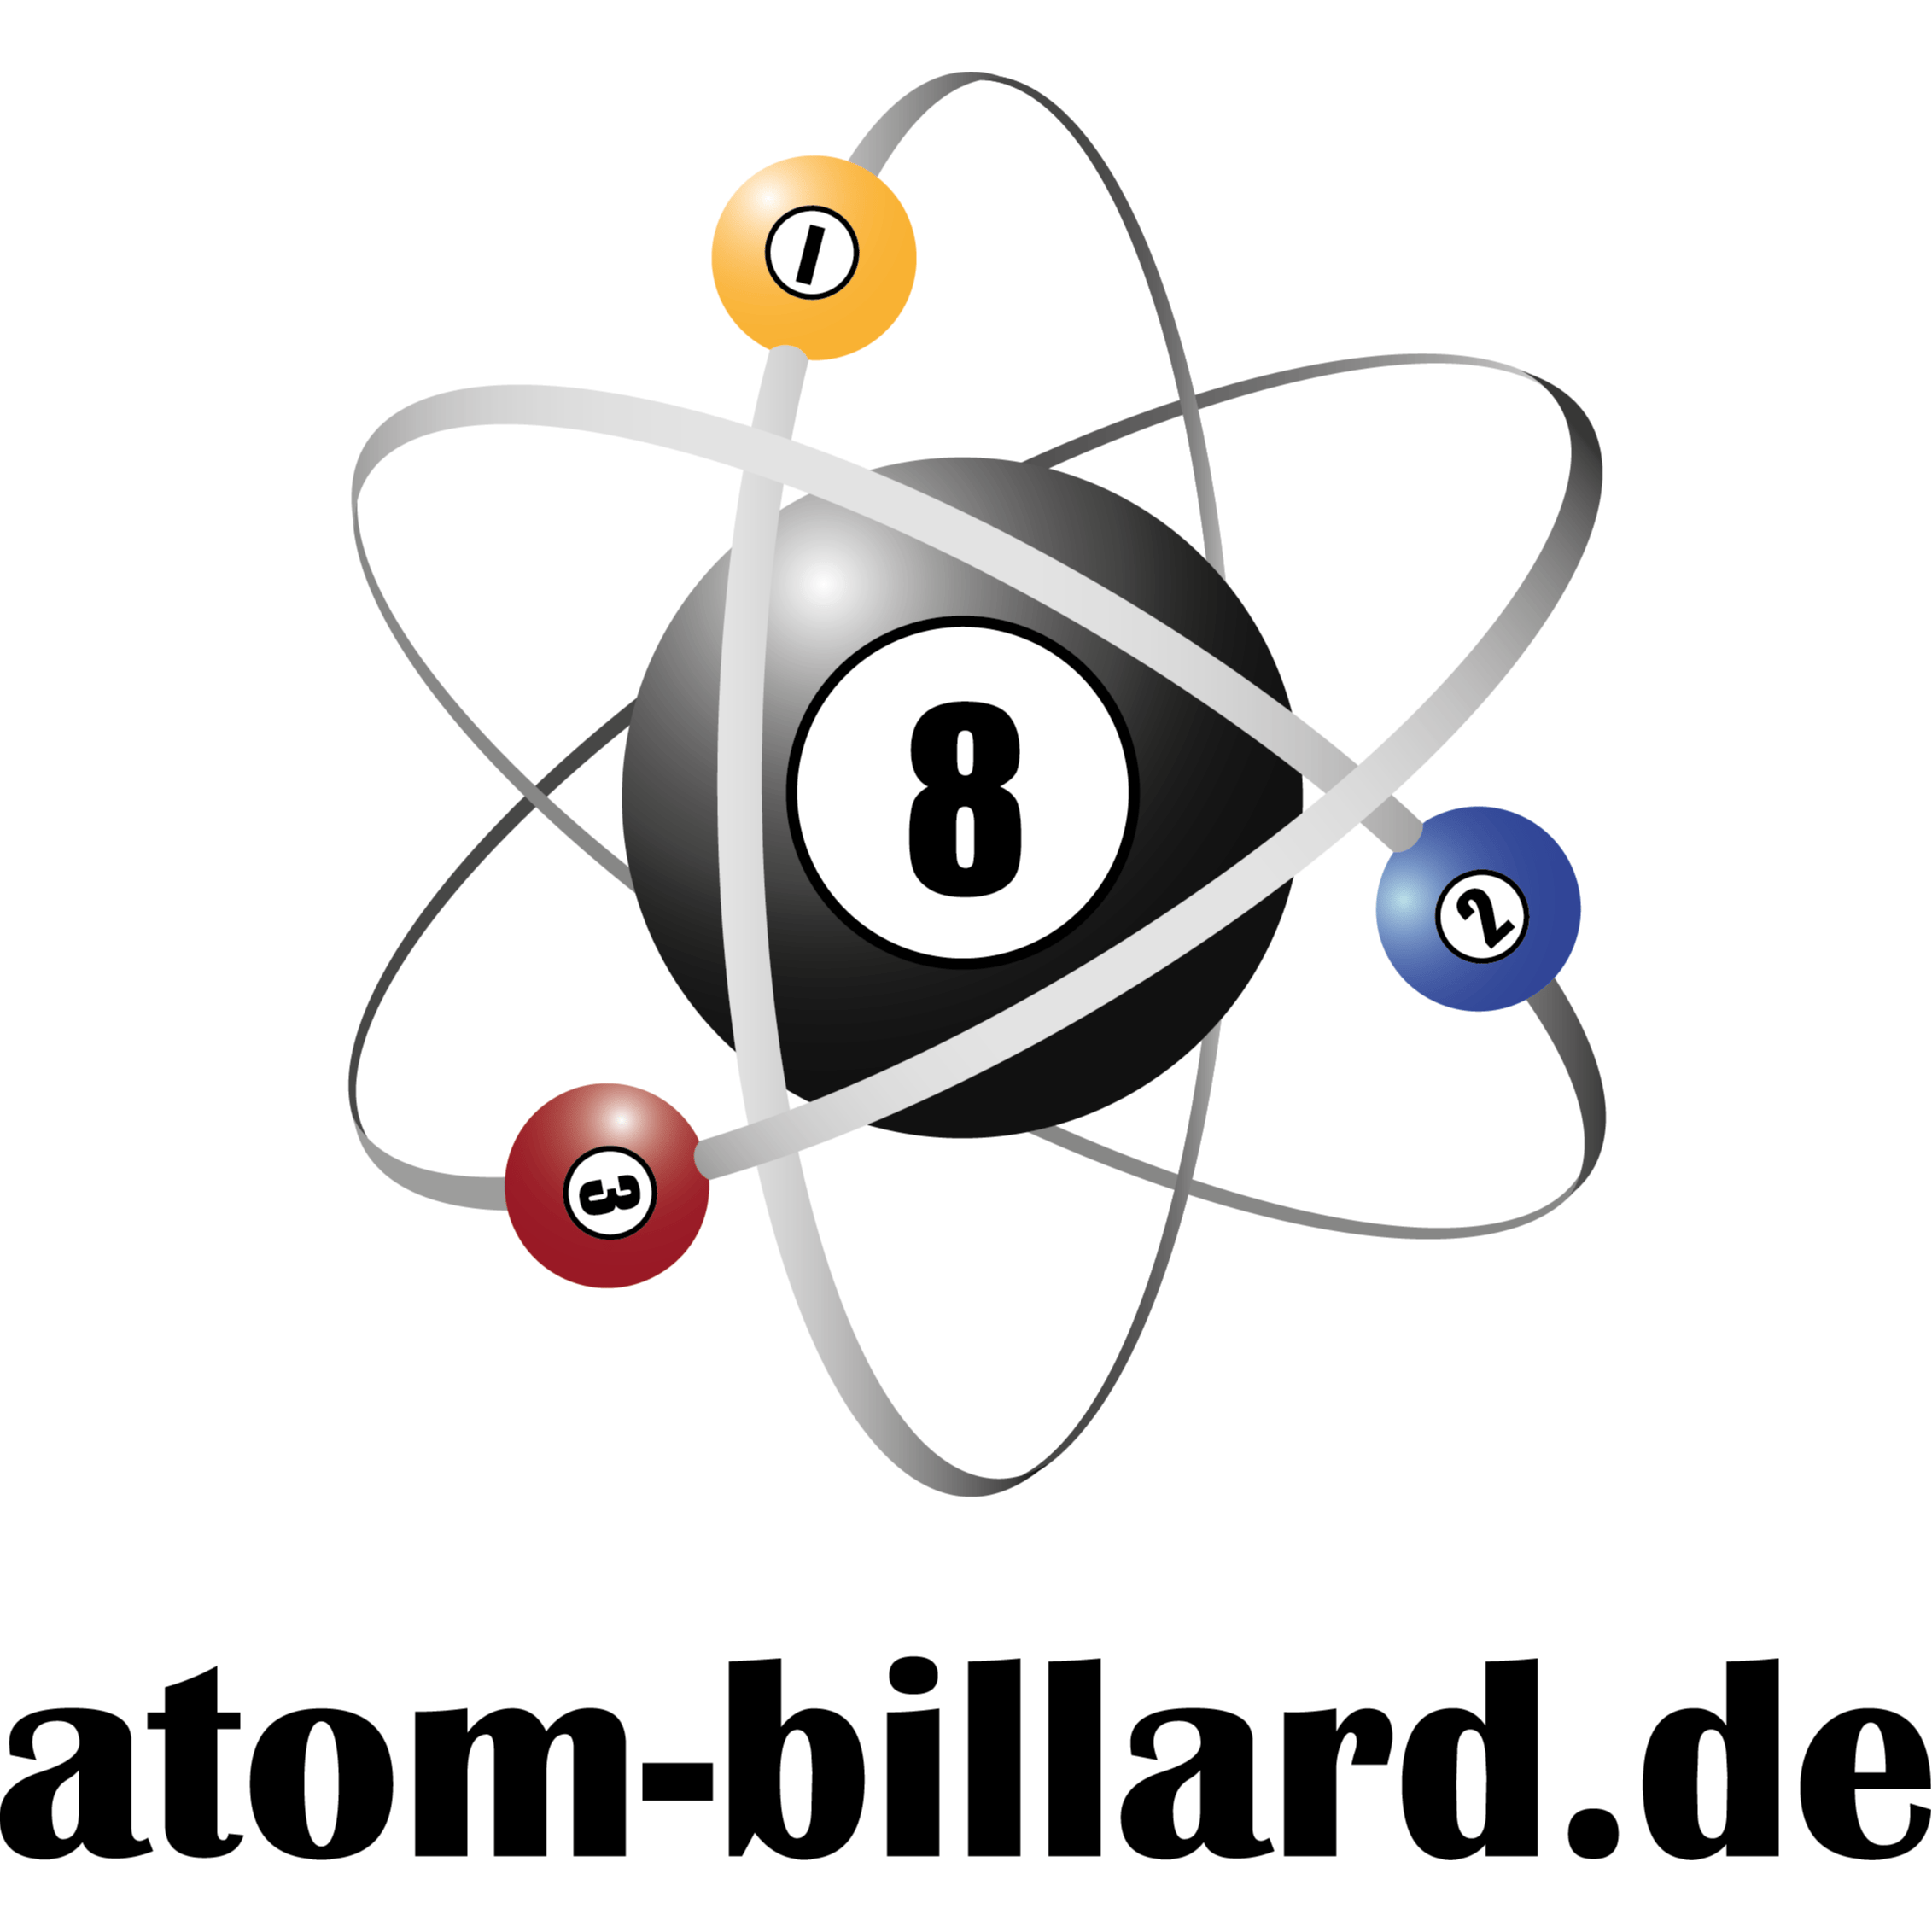 atom-billard.de Billardtische & Billardqueues Logo